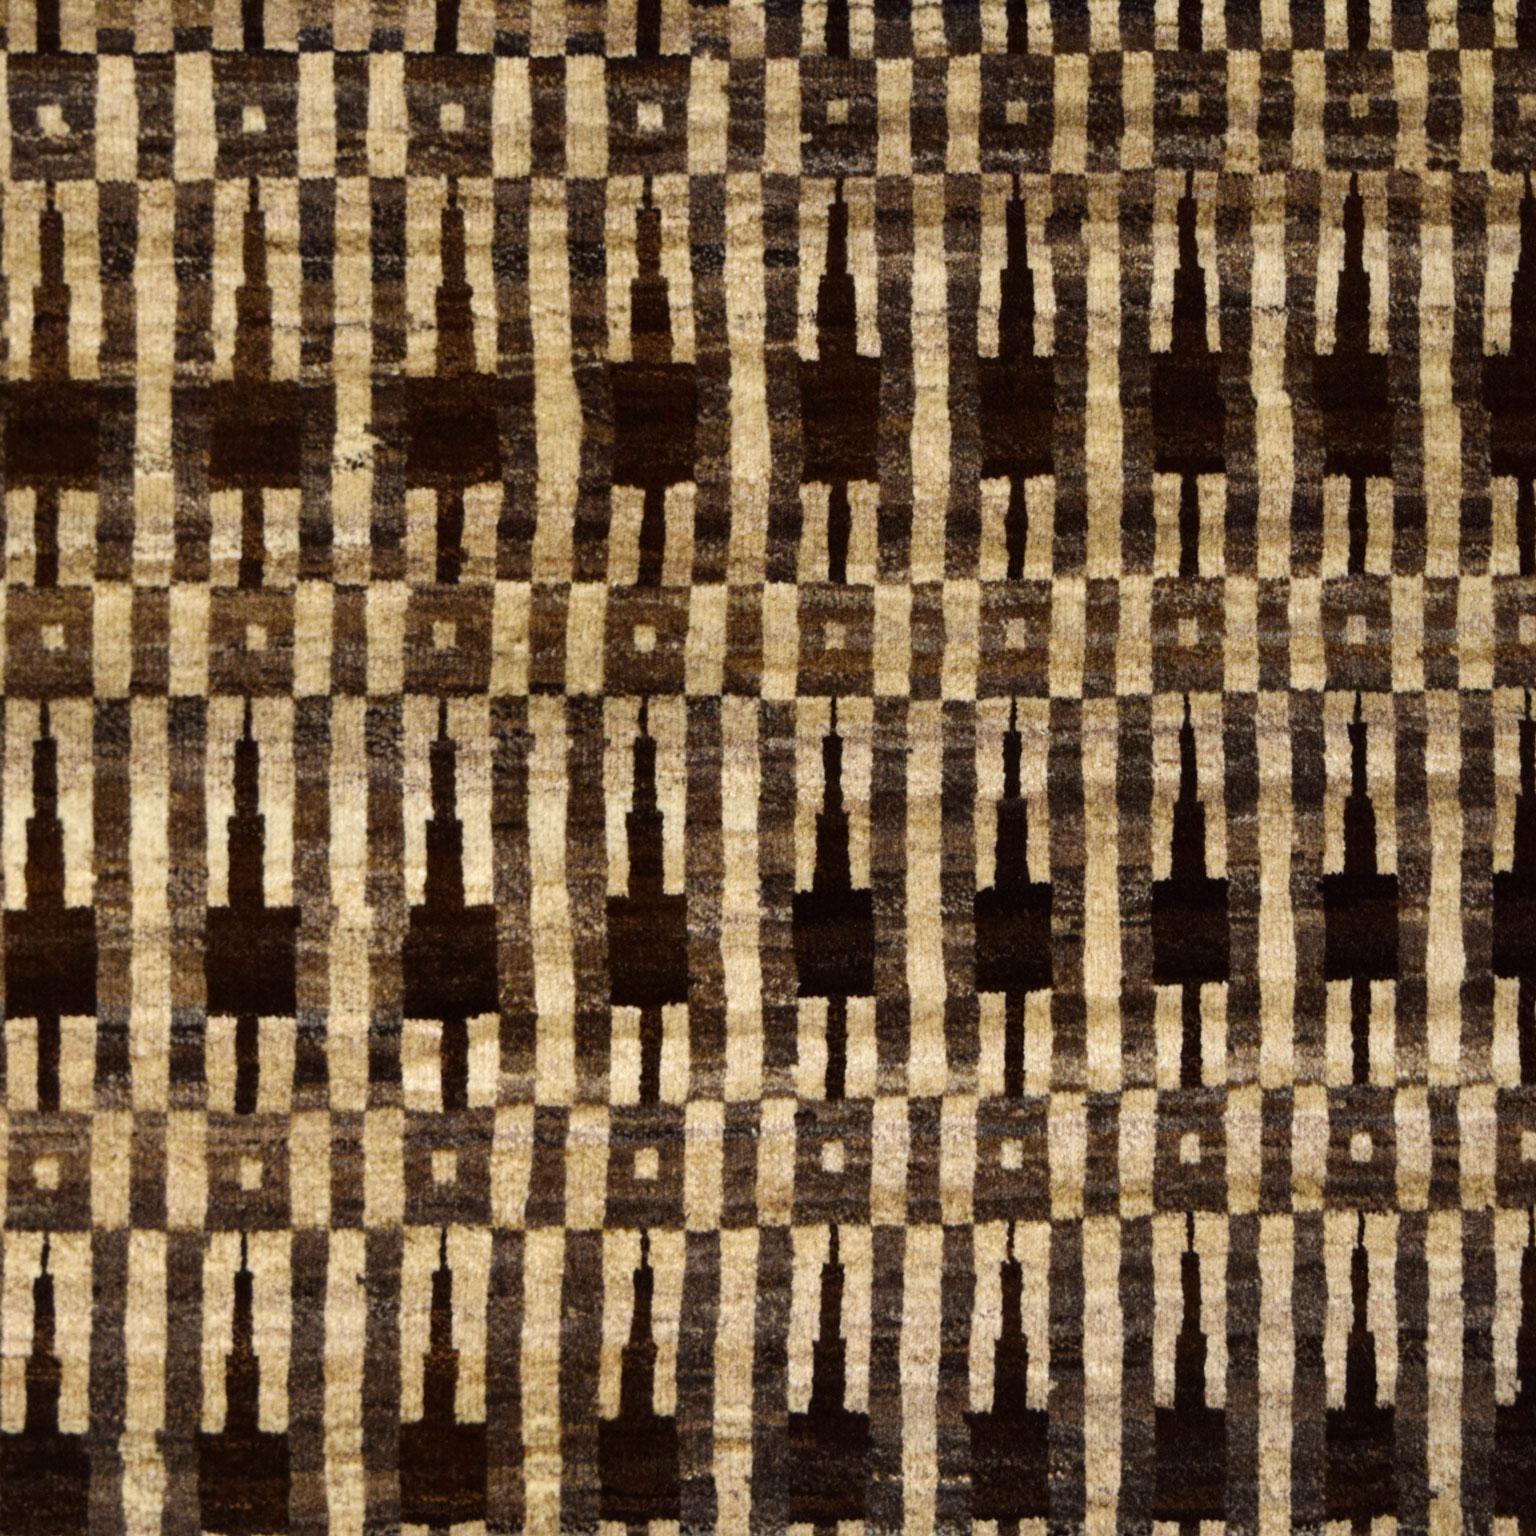 Ce sont les textiles traditionnels de Bakhtiari, datant de plusieurs siècles, qui ont inspiré ce design, et non le monument new-yorkais dont il tire son nom. Les motifs simples d'Empire State créent un contraste saisissant et constituent une